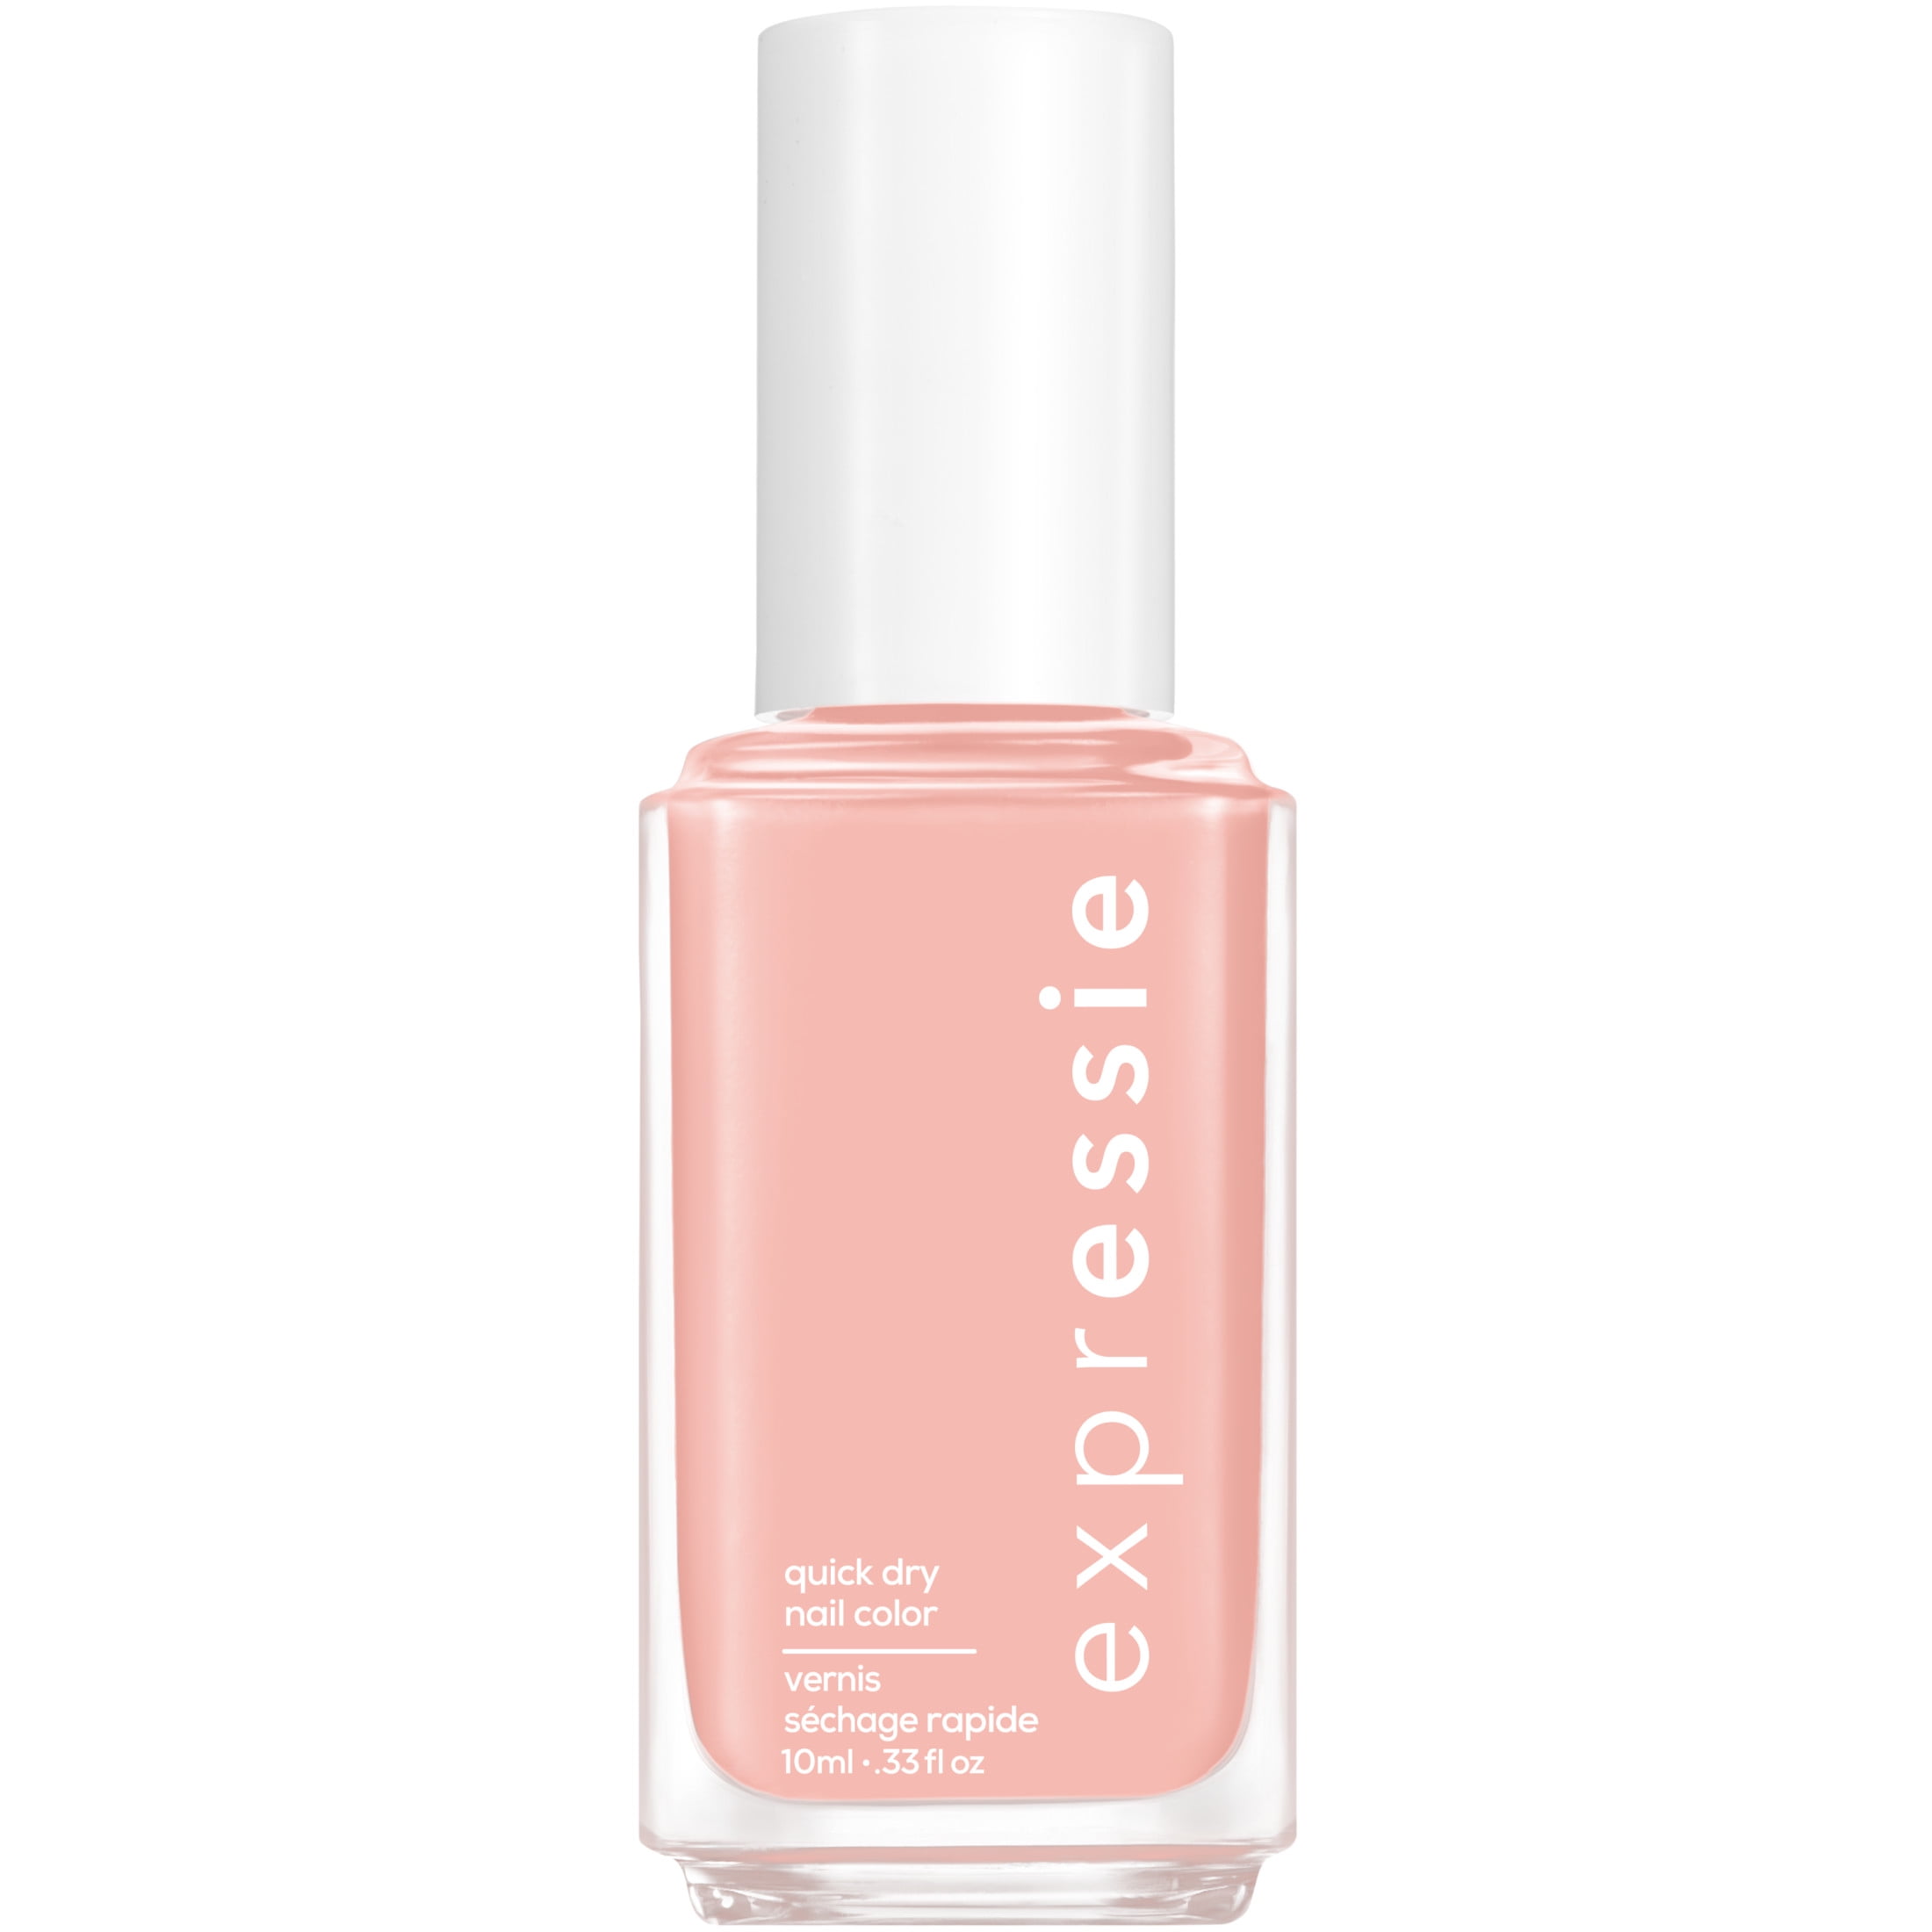 essie Expressie Quick Vegan Pink fl oz Dry 0.33 Beige, Soft Nail Polish, Bottle